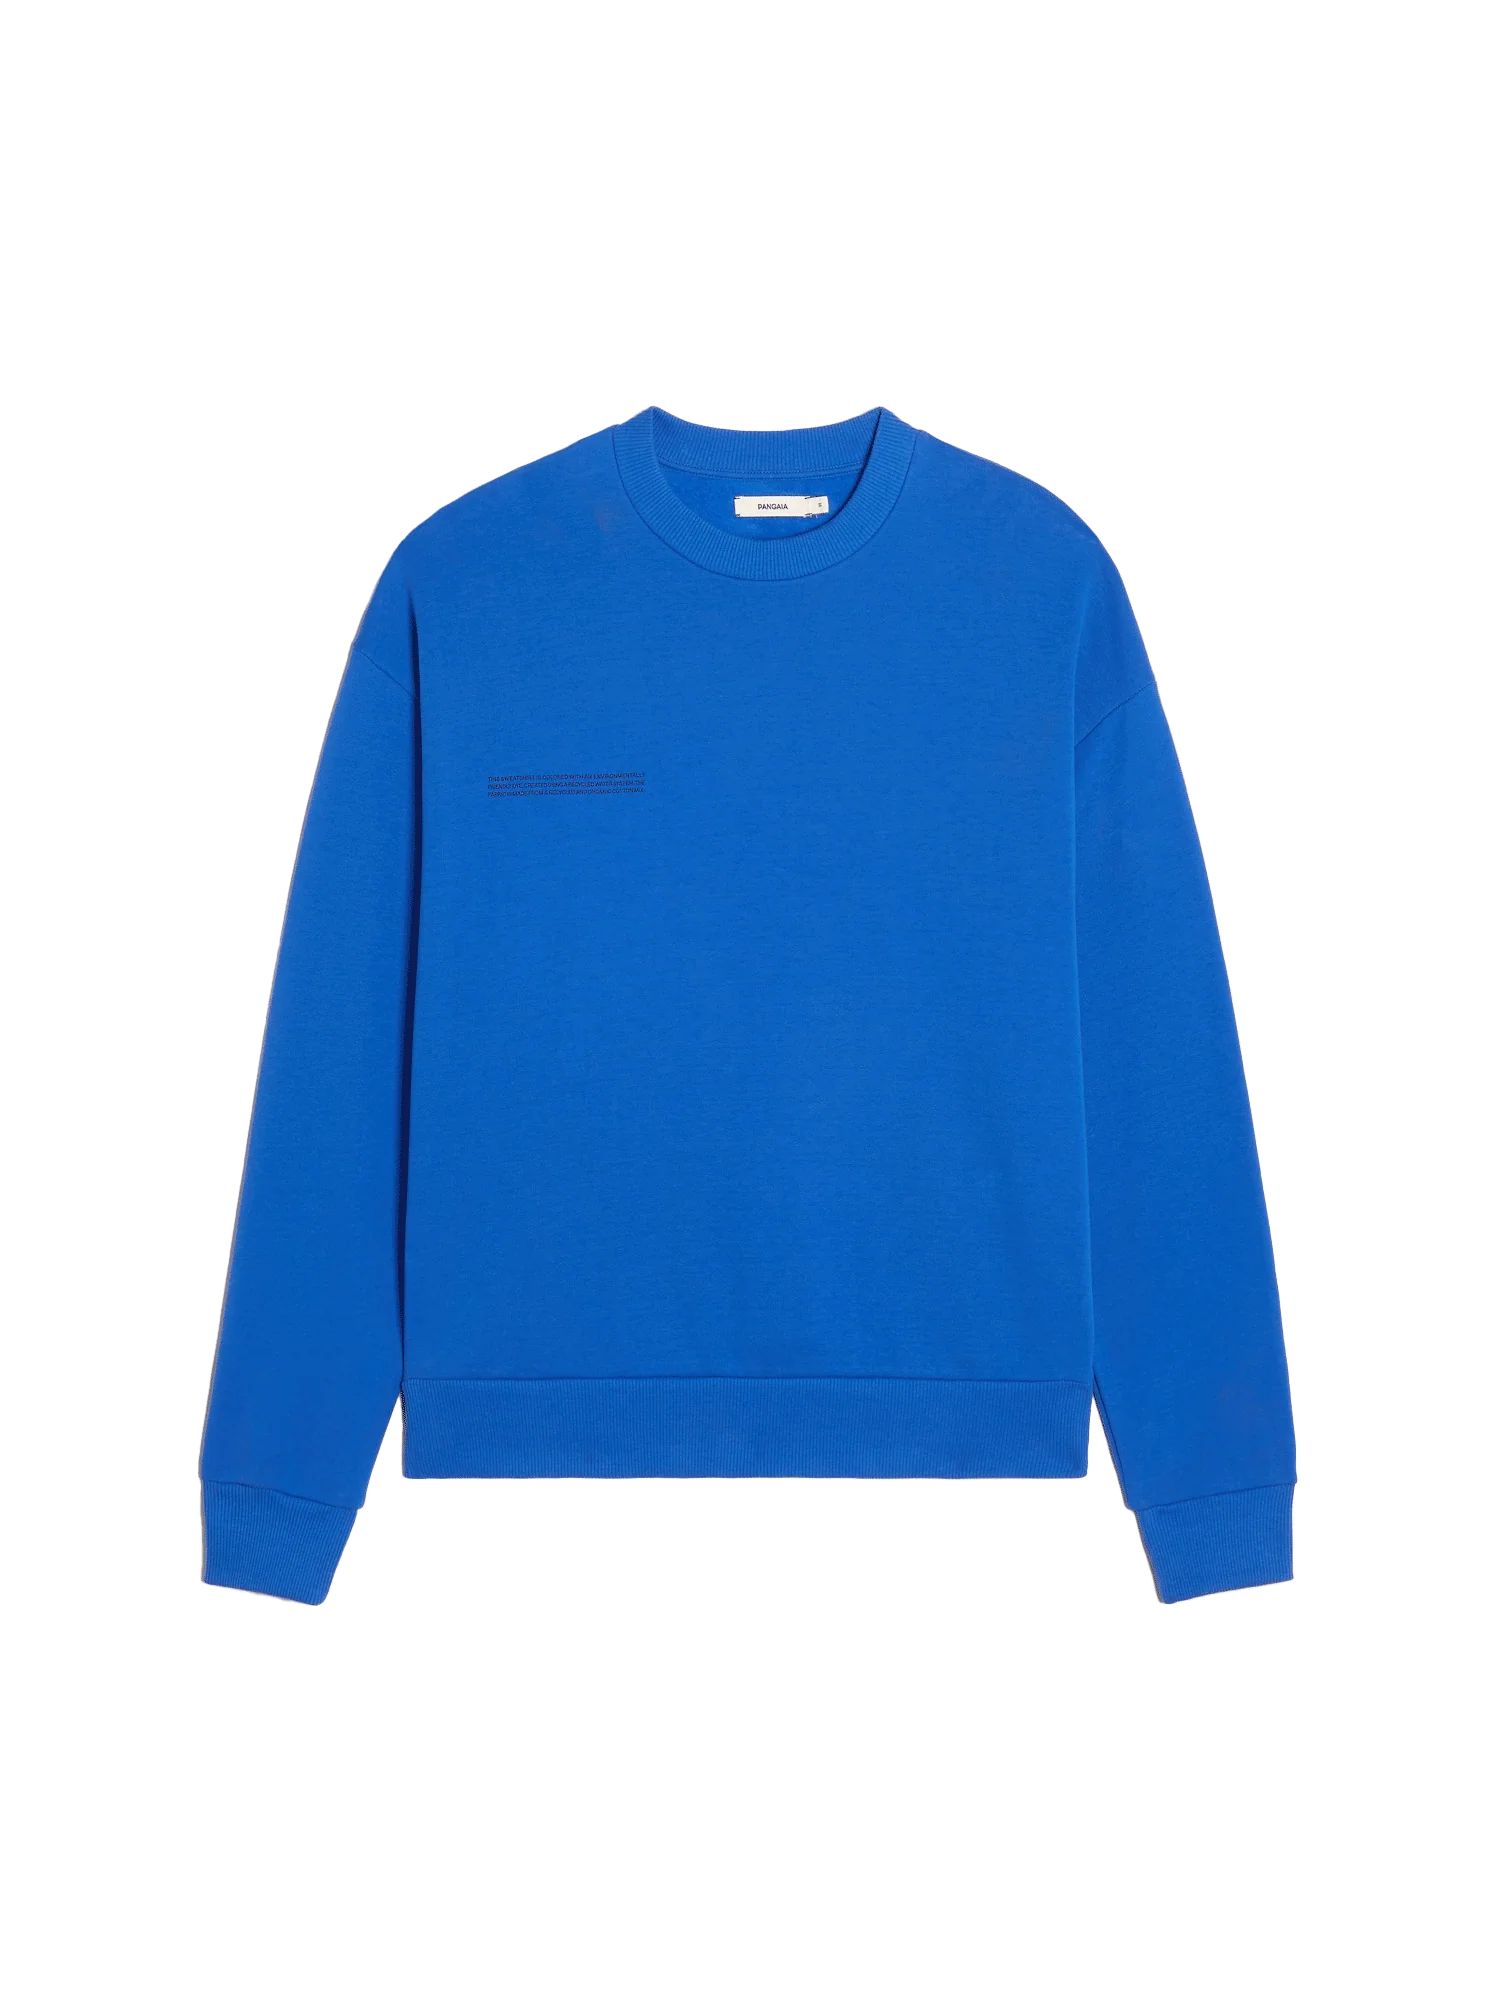 365 Signature Sweatshirt - Cobalt Blue - Pangaia | The Pangaia (EU, UK, AUS)